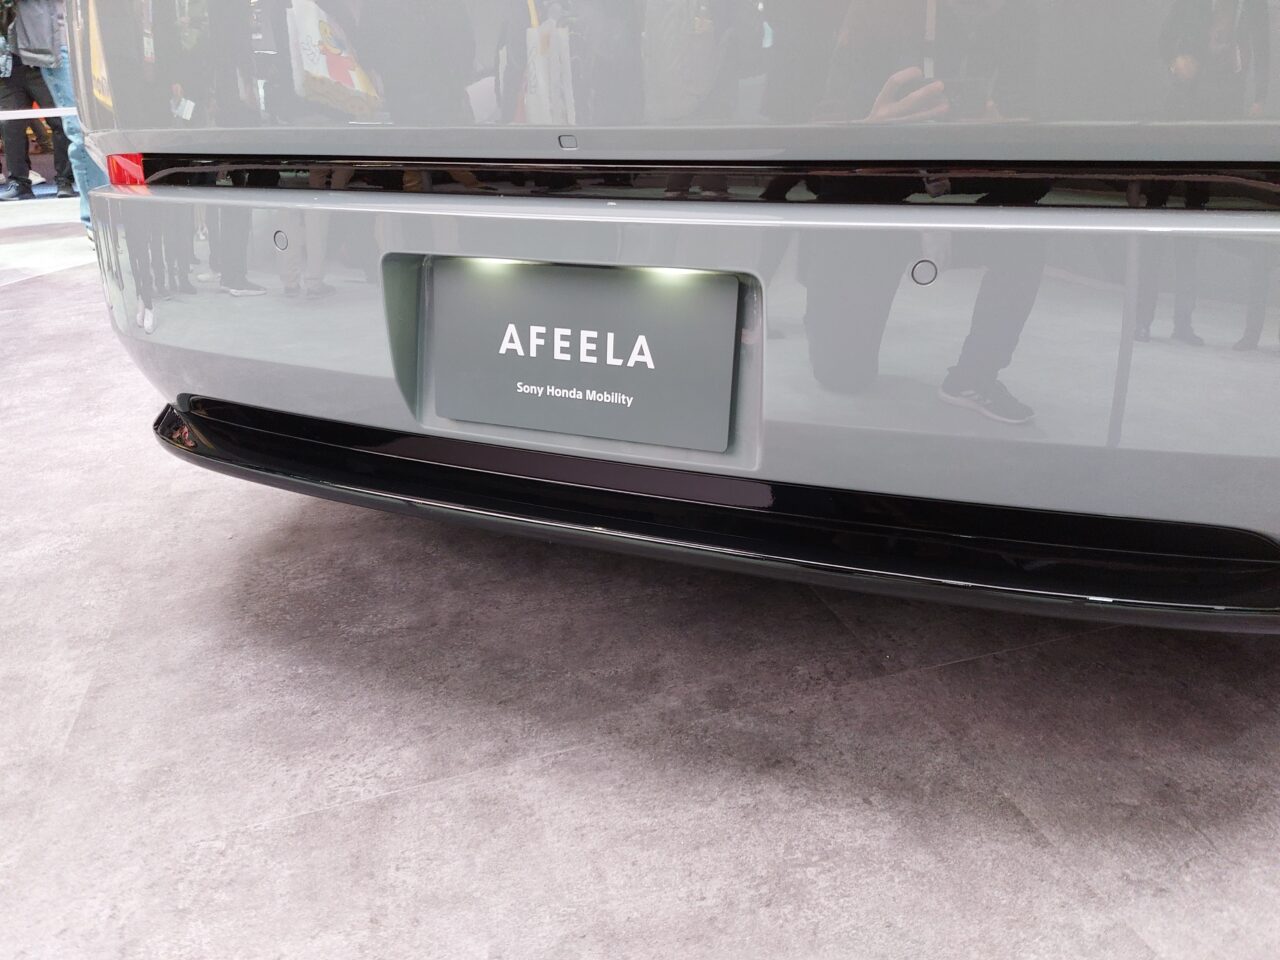 Tylna część szarego samochodu z wyświetlaczem LED na tablicy rejestracyjnej, na którym widnieje napis "AFEELA - Sony Honda Mobility".